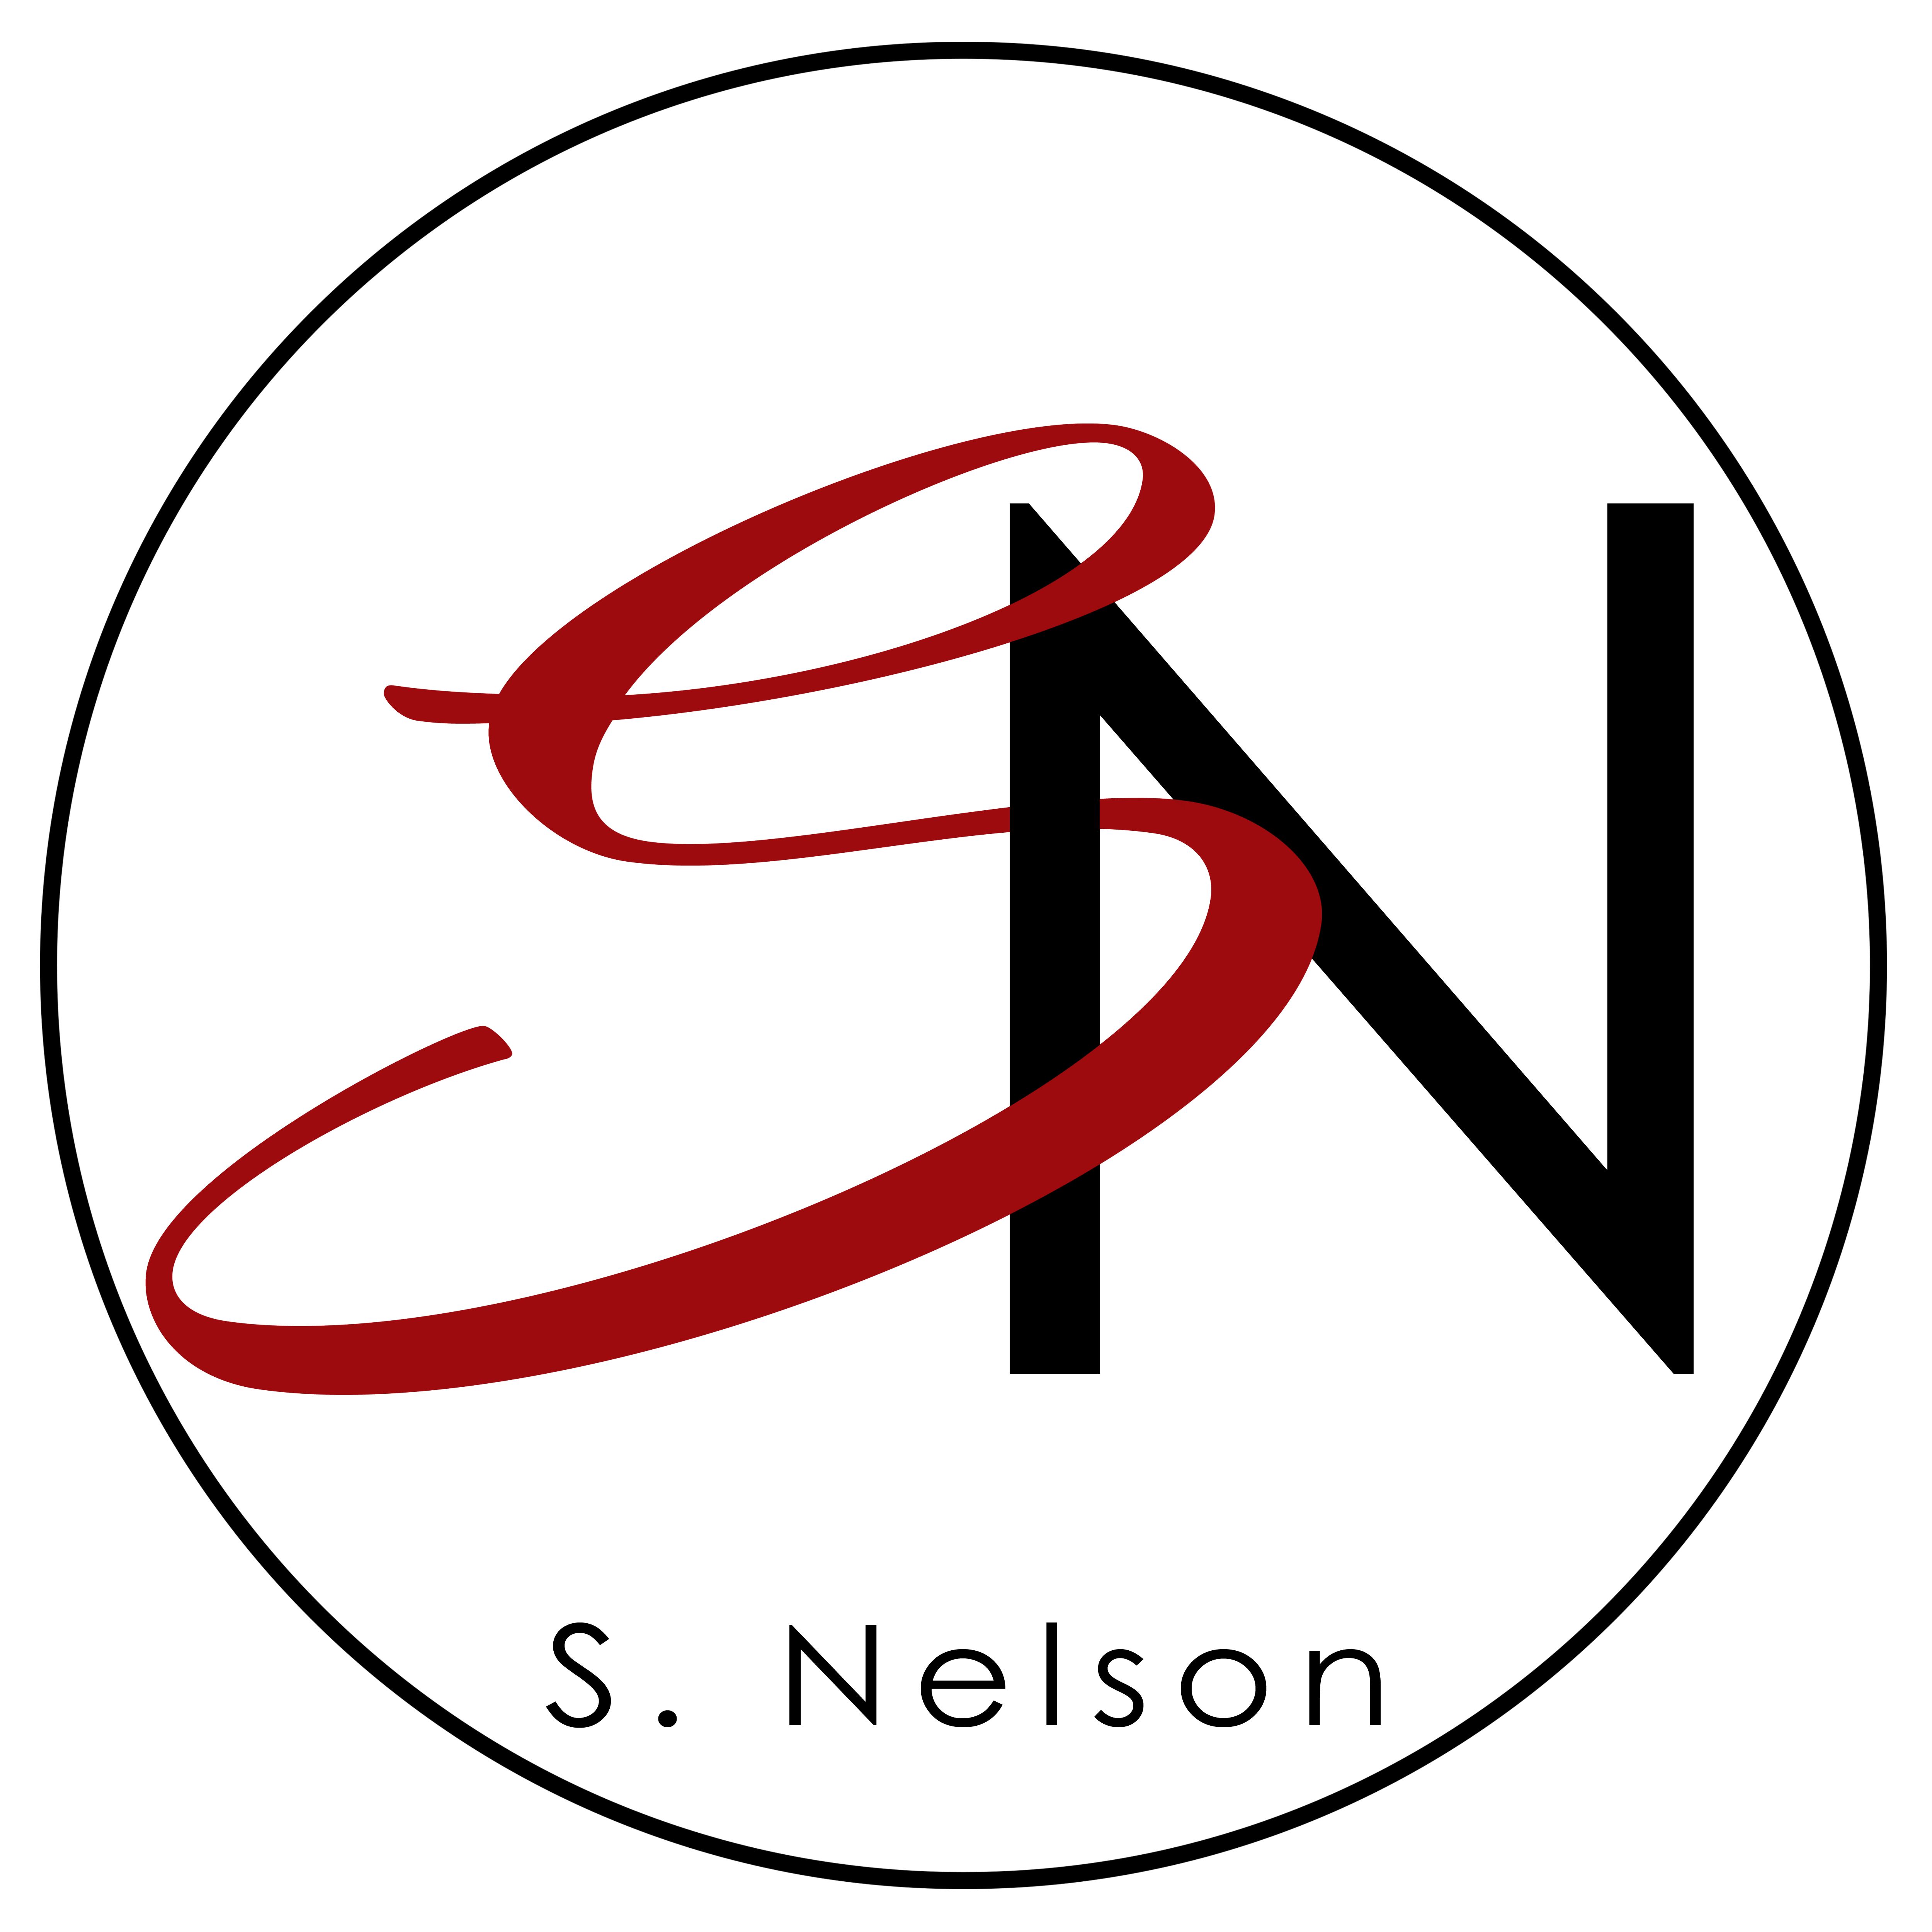 SN in Red Circle Logo - Sn Logos